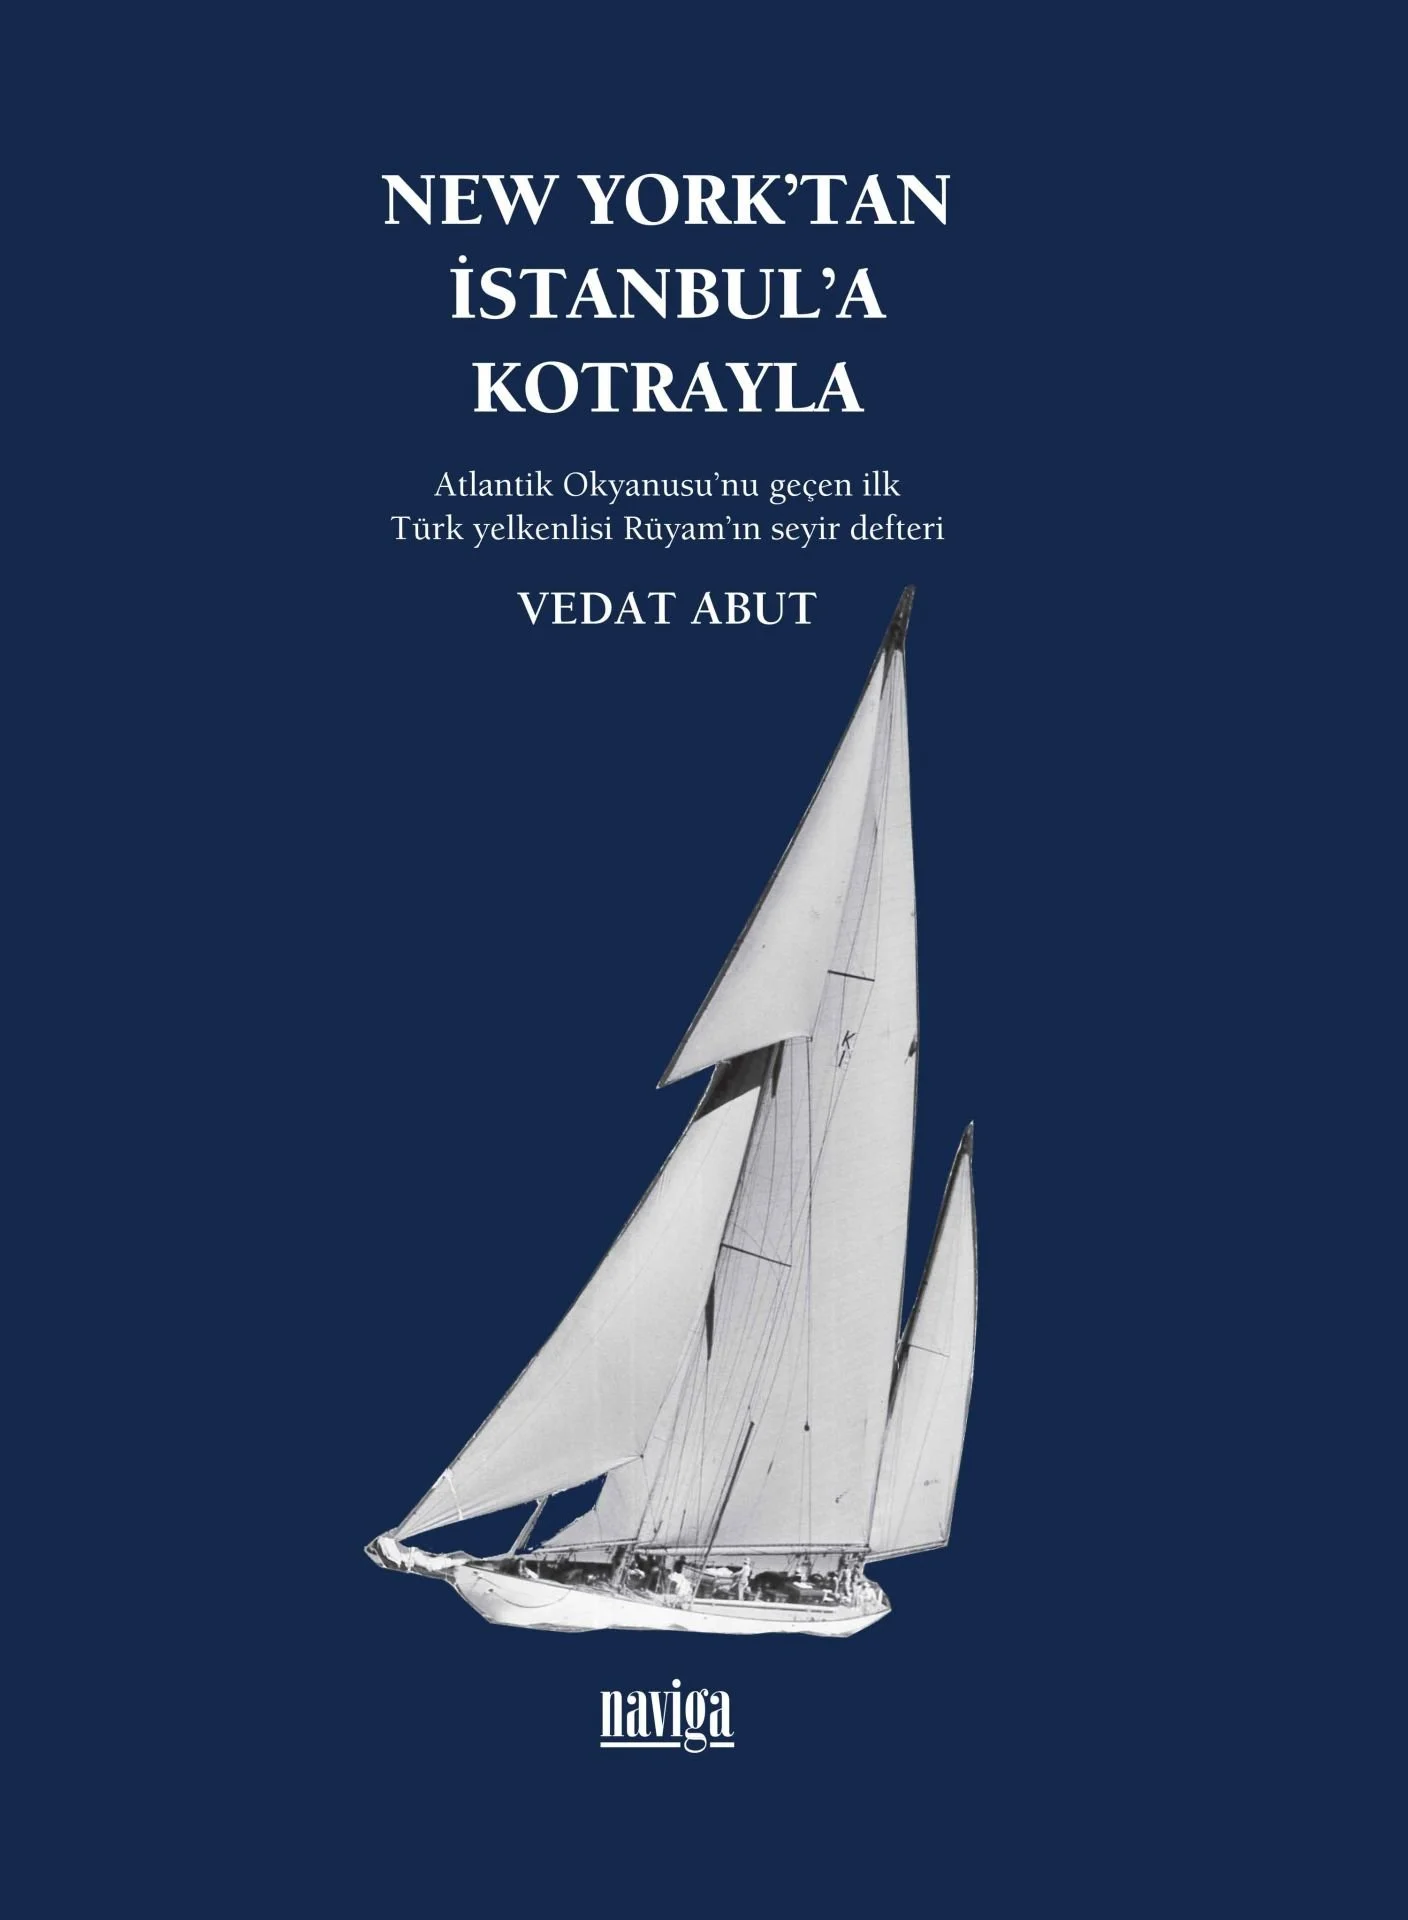 Denzici Kaitaplığı | New York'tan İstanbul'a Kotrayla - Atlantik Okyanusu'nu Geçen İlk Türk Yelkenlisi Rüyam'ın Seyir Defteri